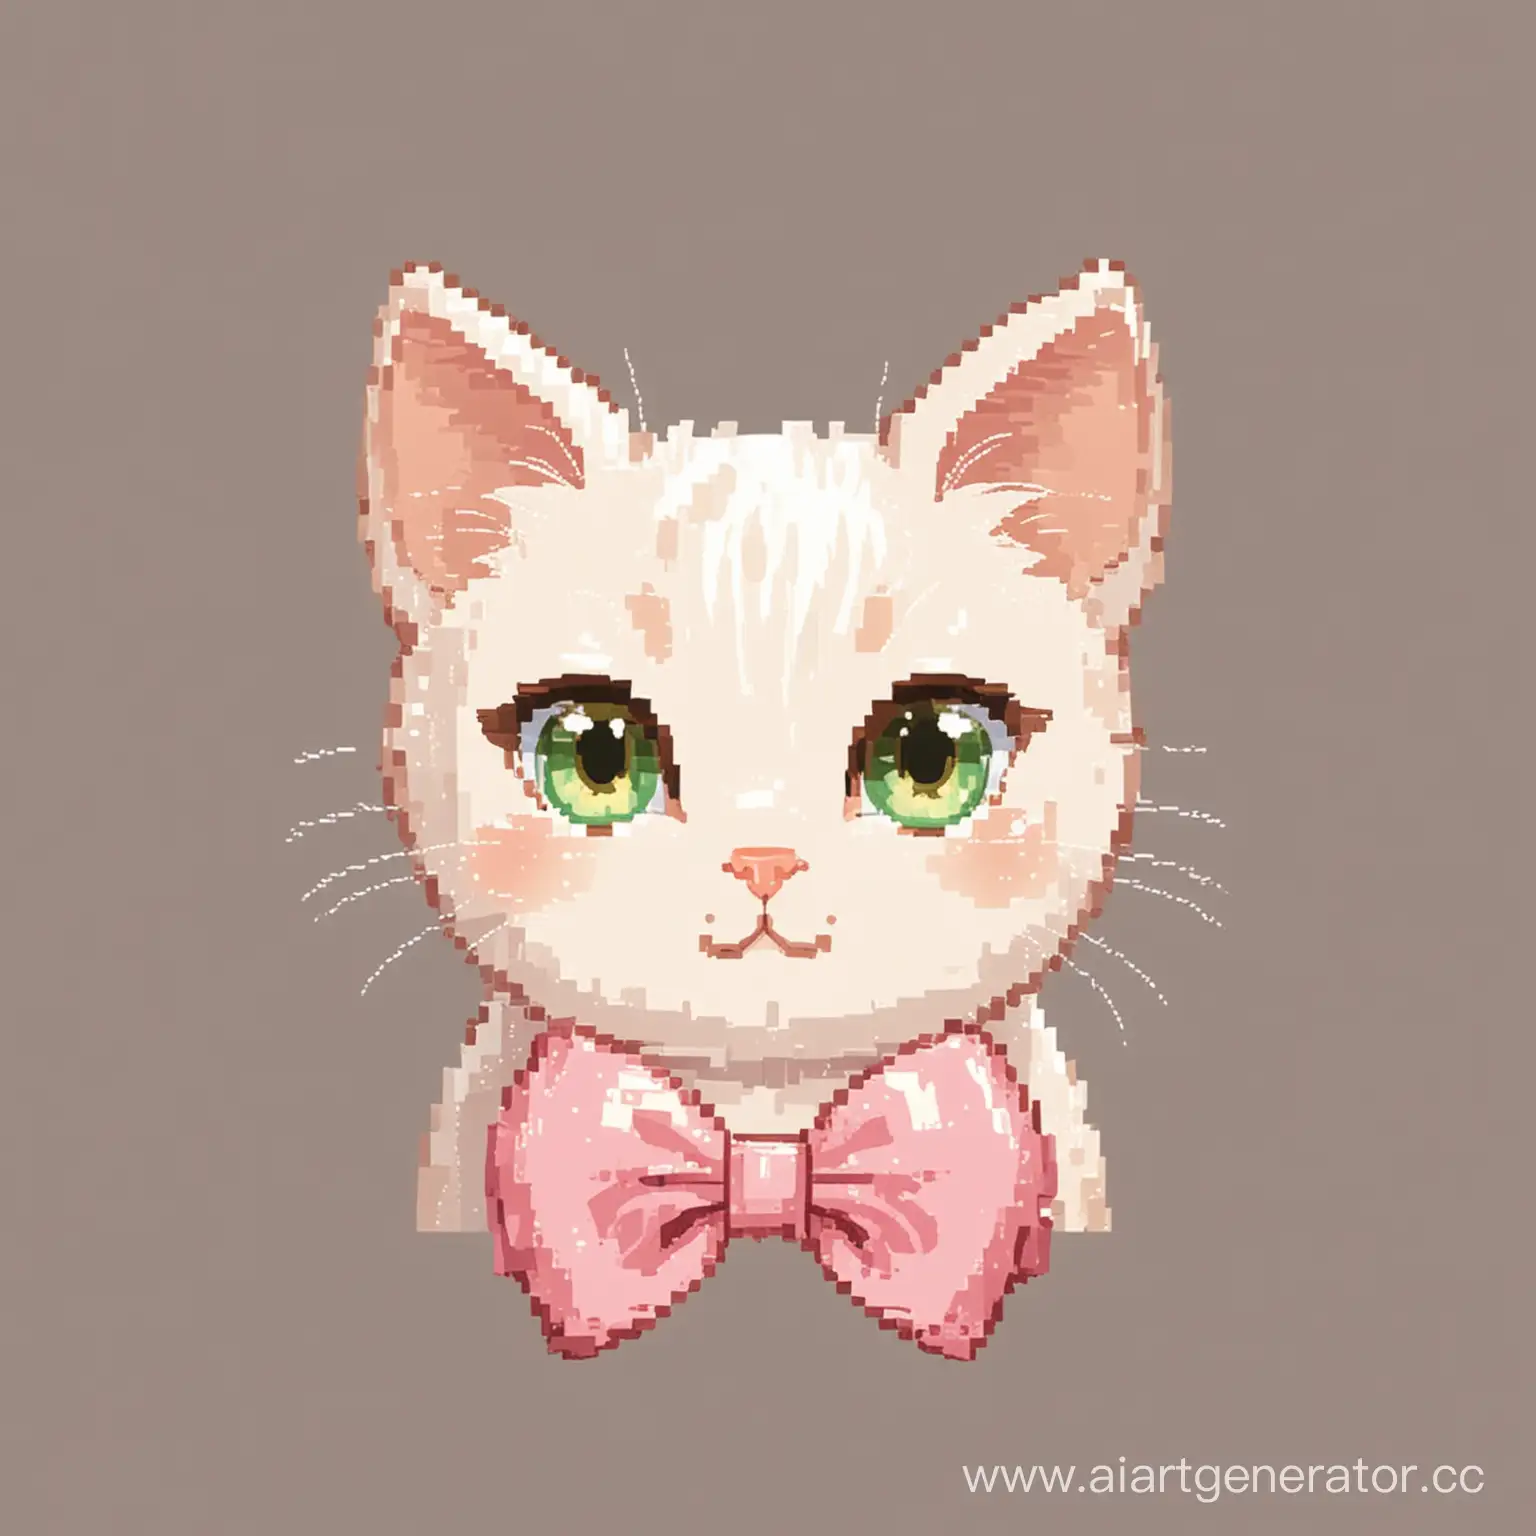 нежно белая пиксельная кошка с зелеными глазами,с розовым бантиком,с коричневым и кремовым ухом